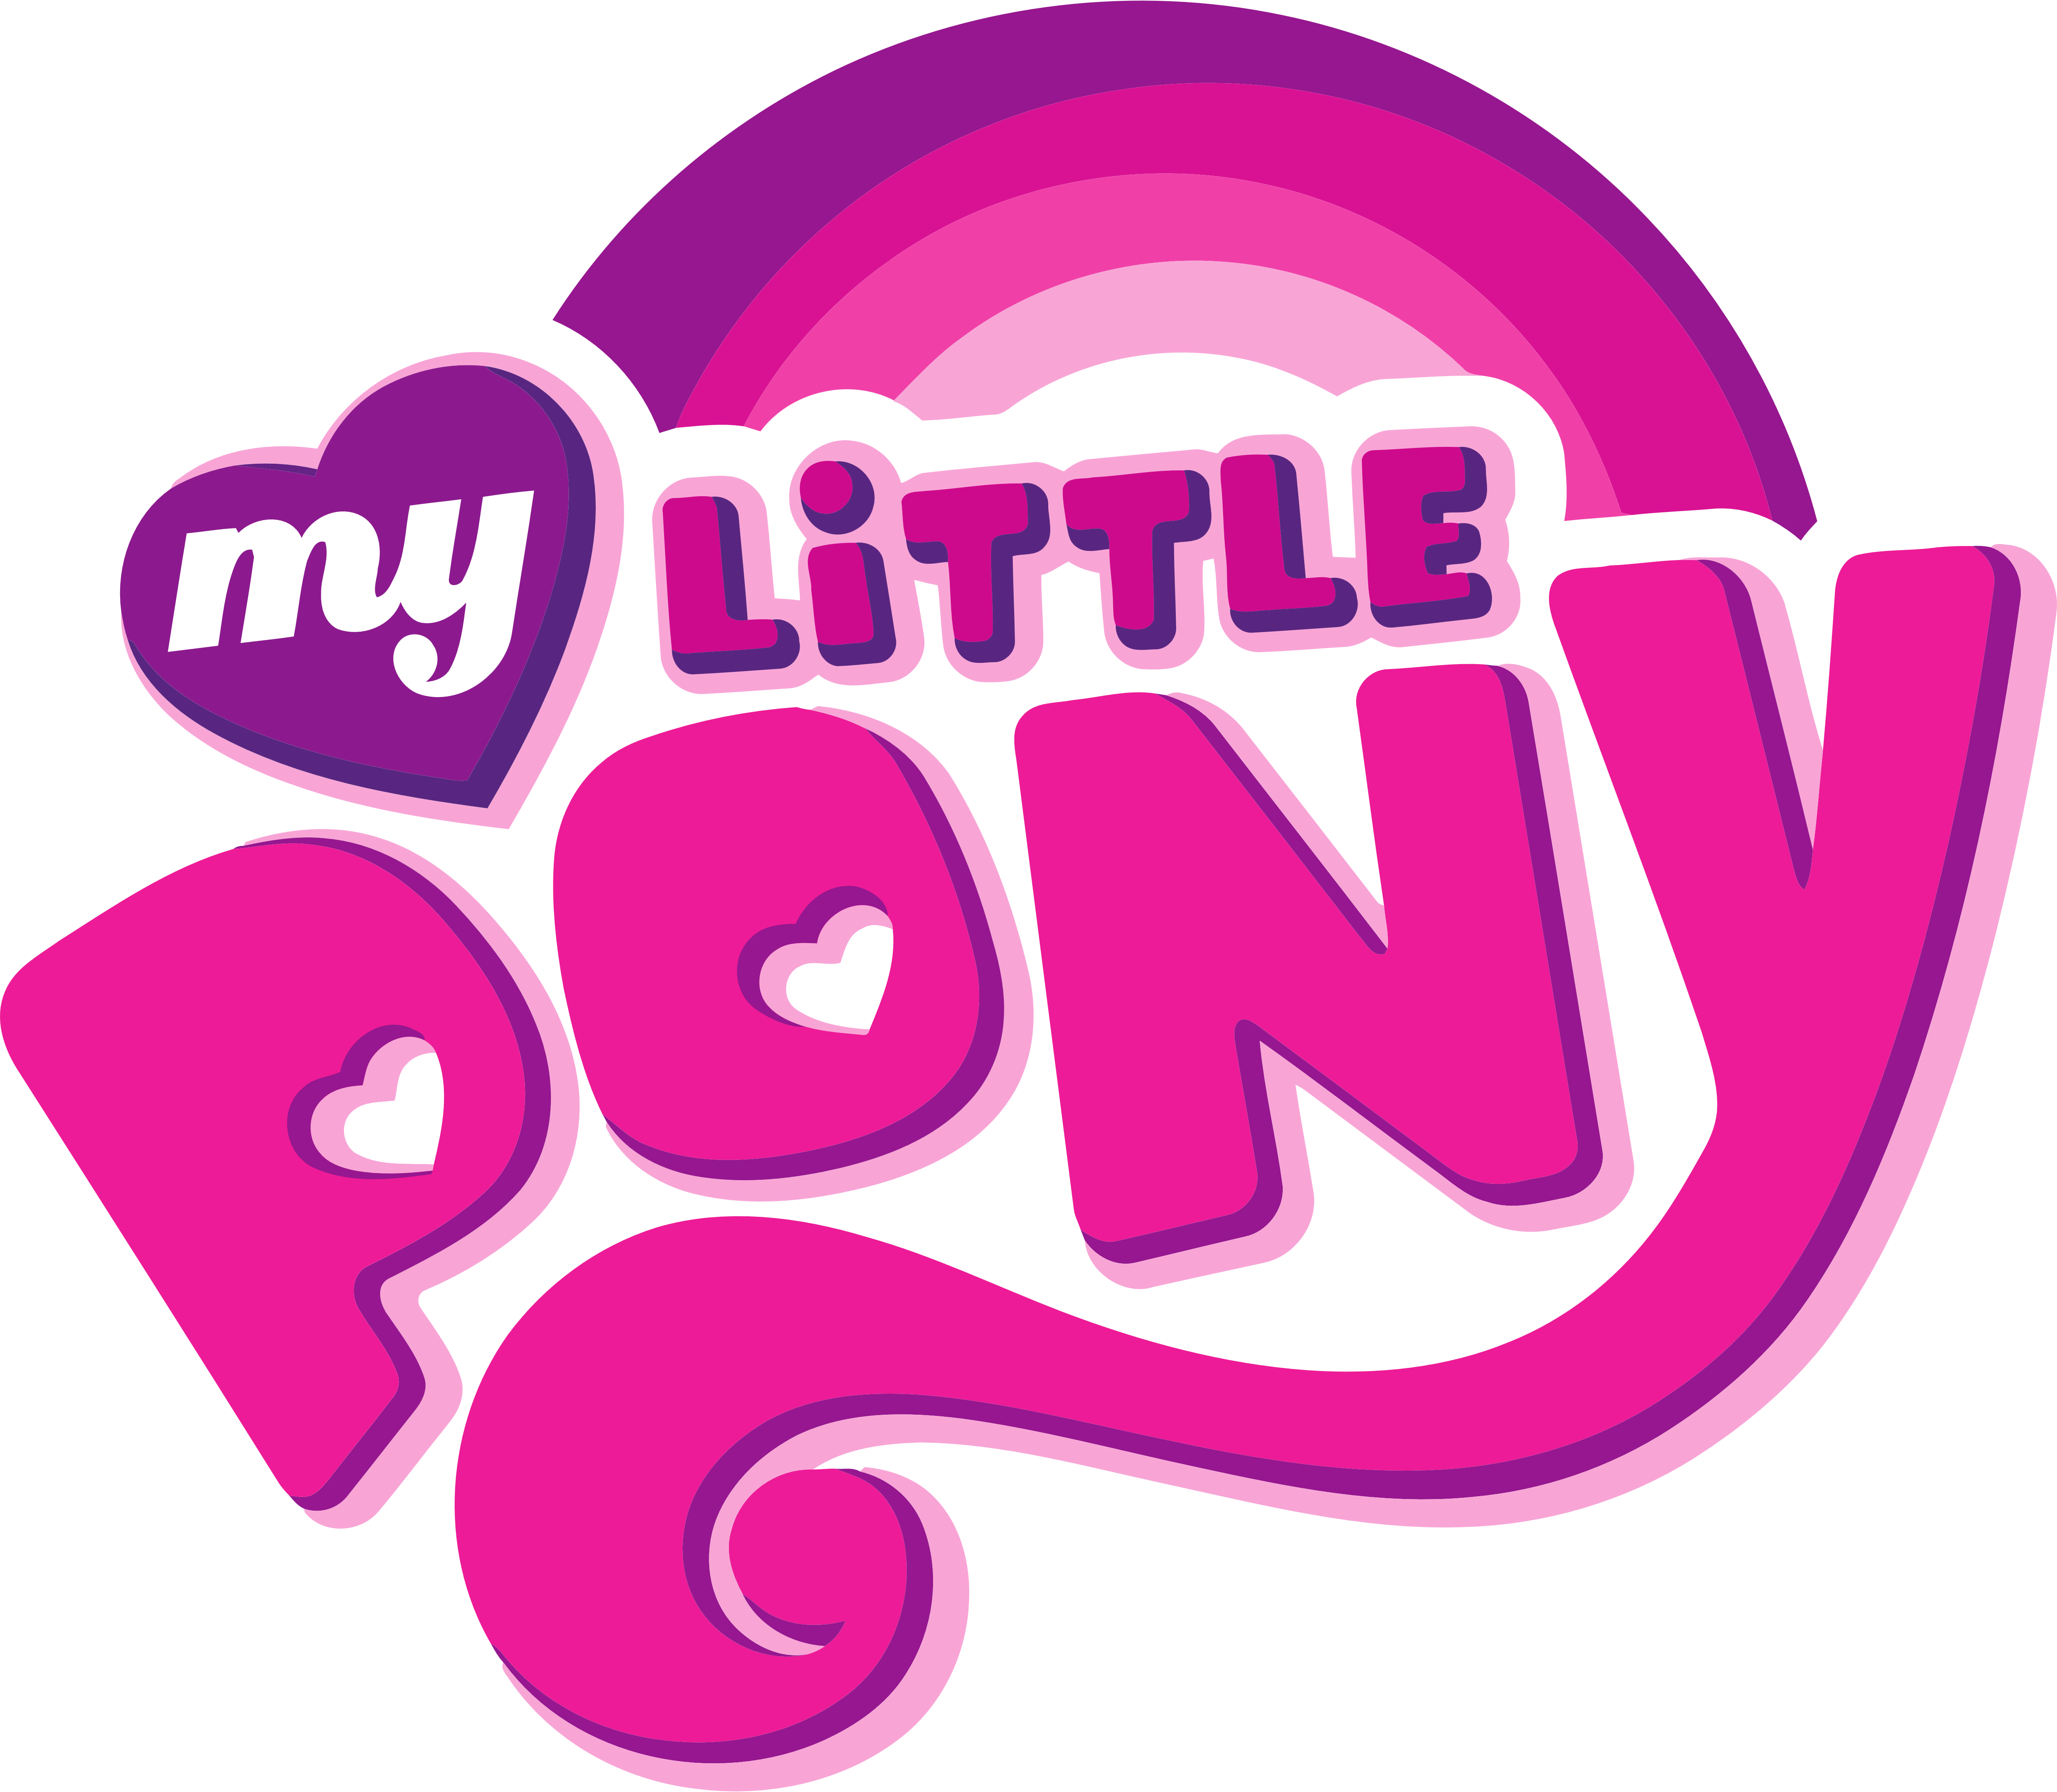 Details 48 como editar el logo de my little pony - Abzlocal.mx